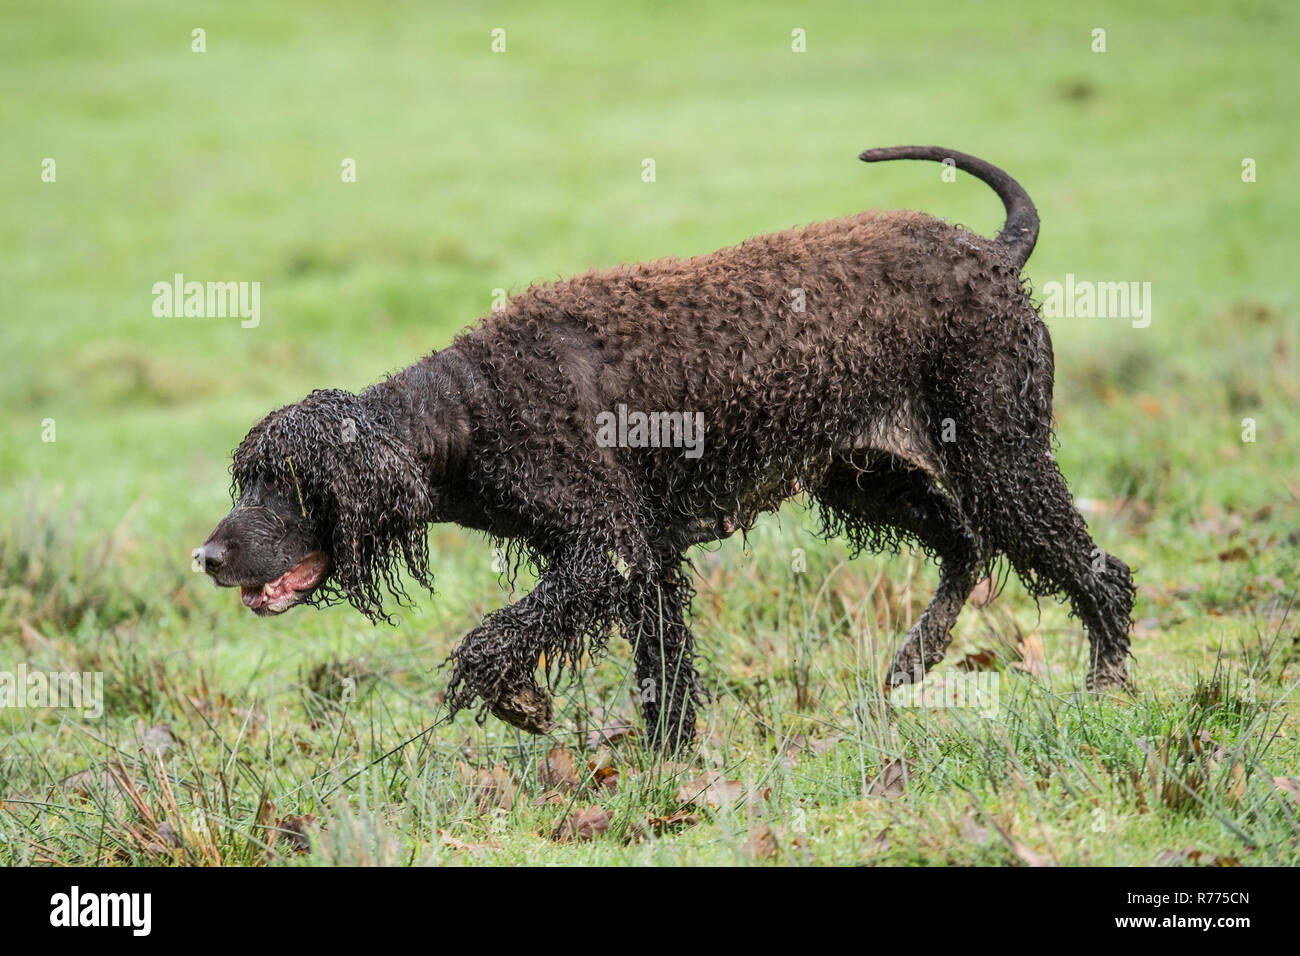 Irish water spaniel dog Stock Photo